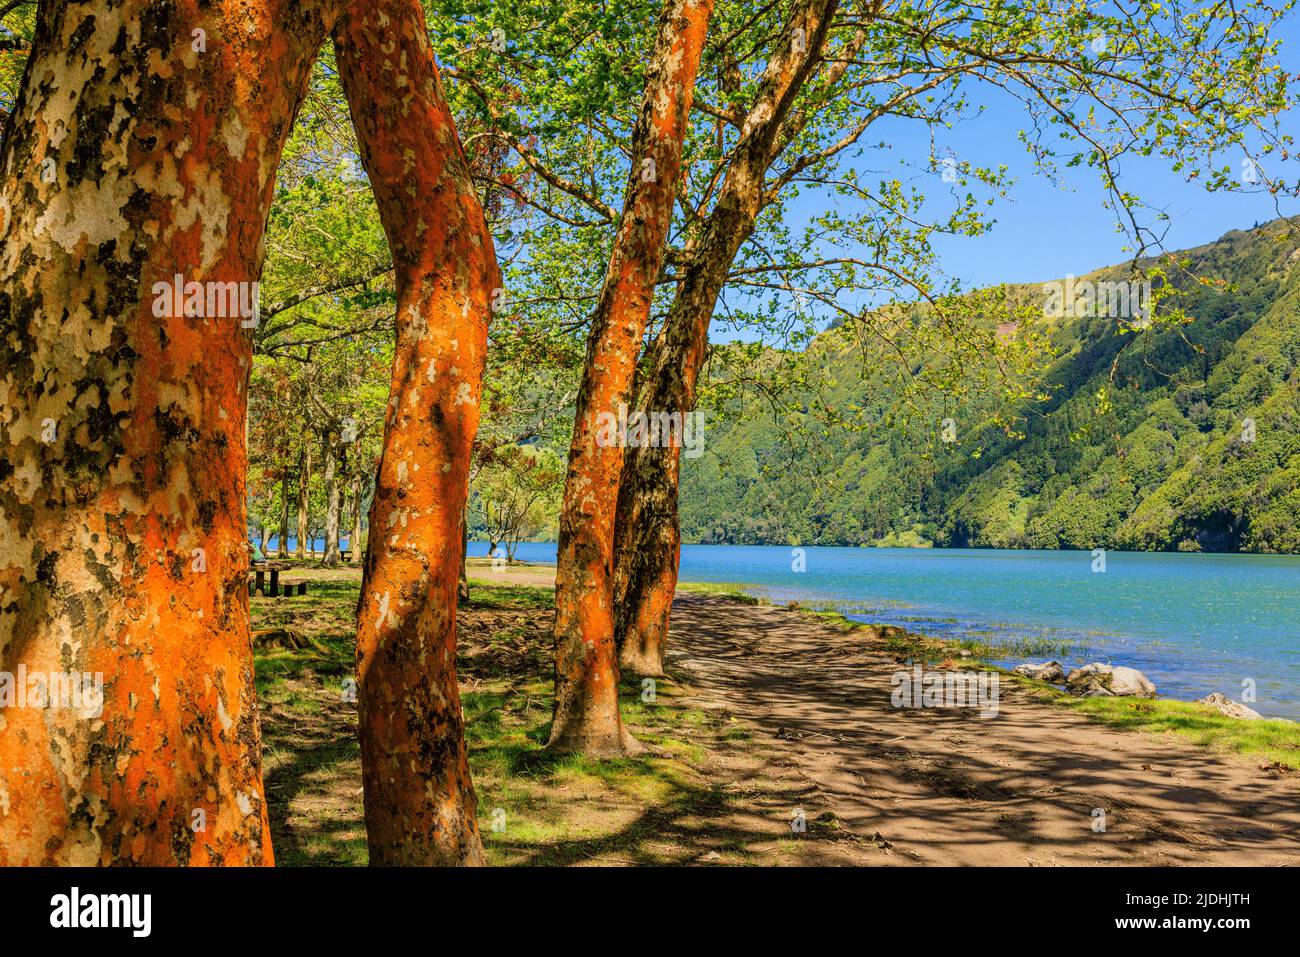 Eine idyllische Lage am Ufer der Lagao azul sete cidades mit oranger Rinde einer Reihe von Bergahores, einem grauen Bimssteinstrand, blauem See und grünen Hügeln Stockfoto